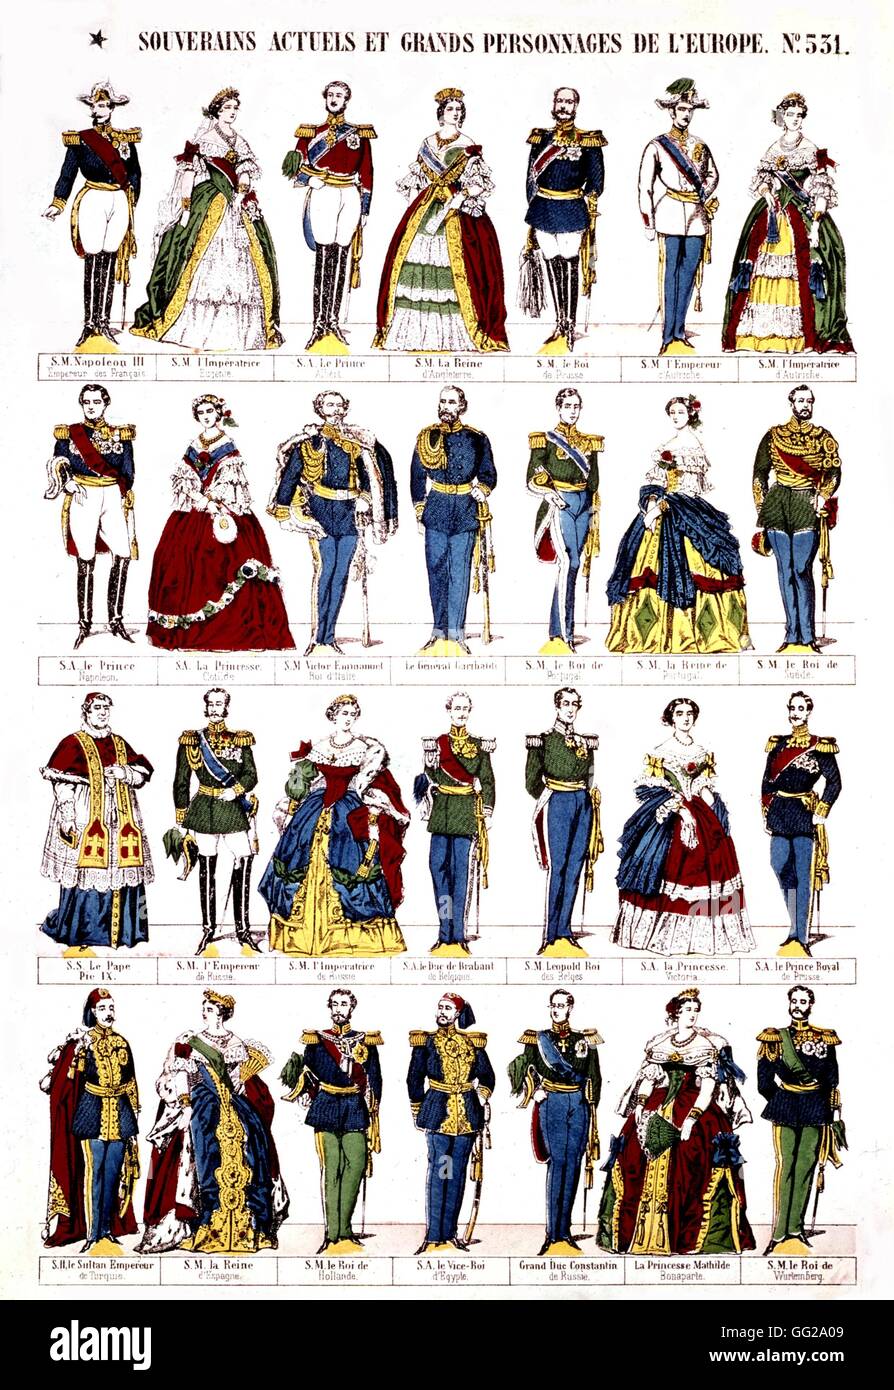 Epinal estampa popular, reyes y personajes del Segundo Imperio francés del siglo XIX. Foto de stock